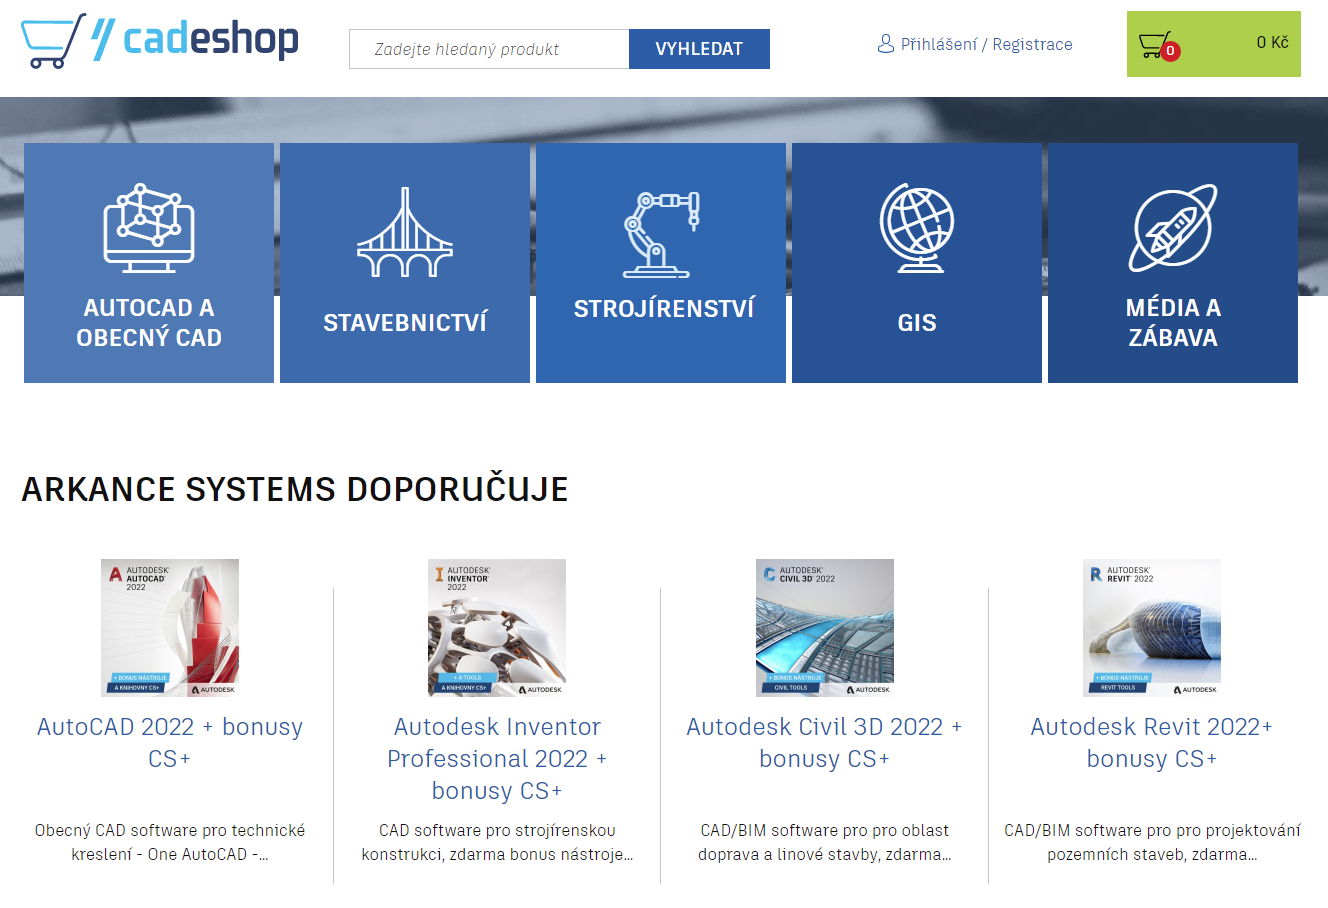 CAD e-shop společnosti Arkance Systems - produkty, služby, e-learning